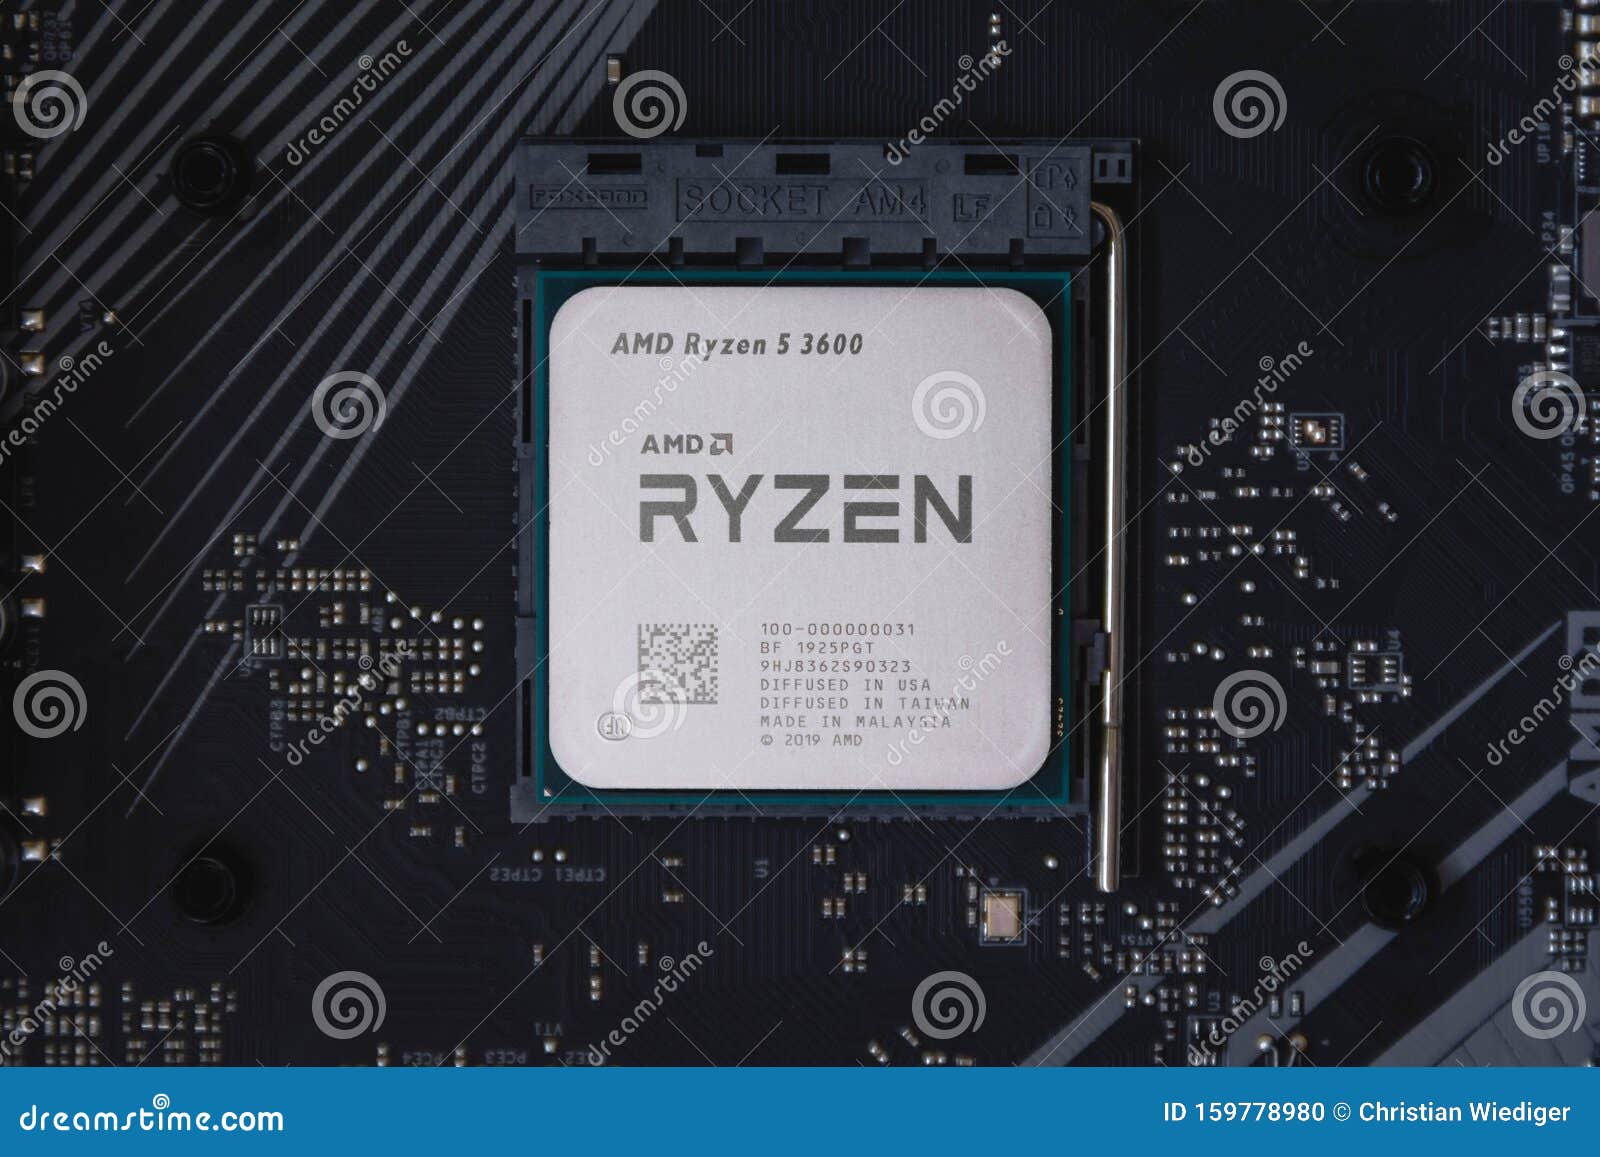 5 3600 сокет. Плата под процессор Ryzen 5 3600 материнская. 6 Нанометров процессор. АМД р7графикс цена.